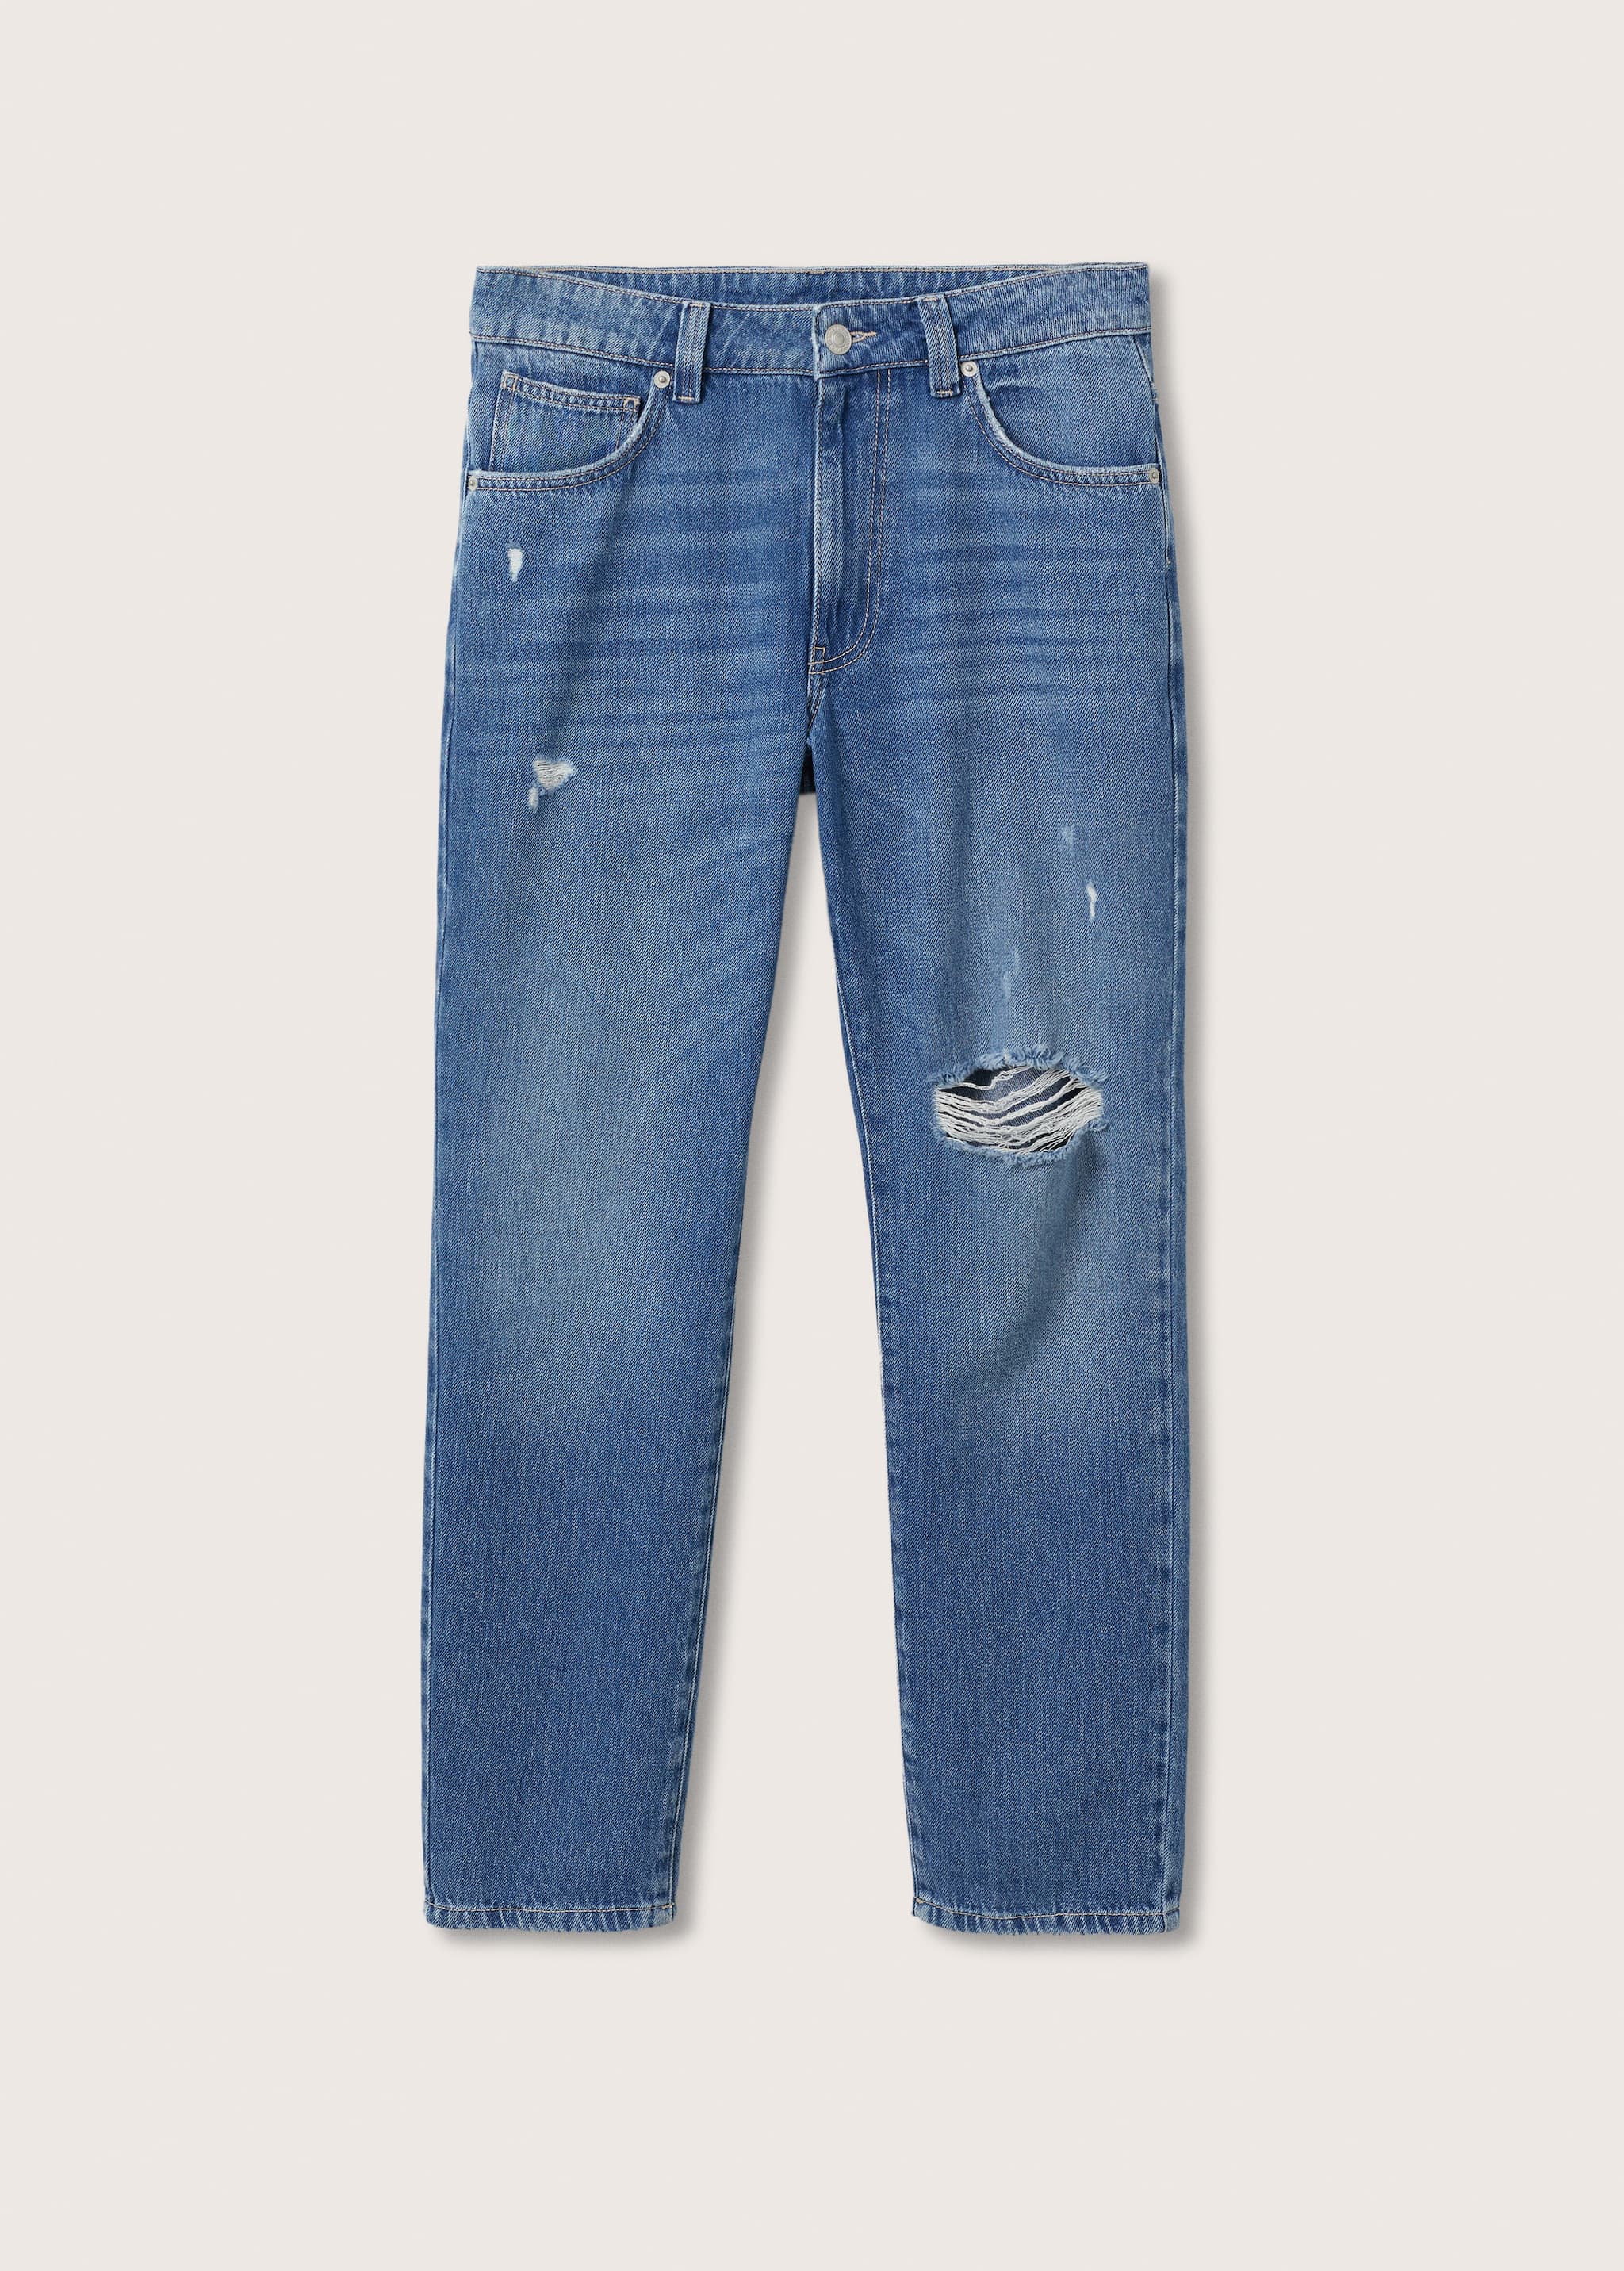 Jeans regular rotos decorativos - Artículo sin modelo